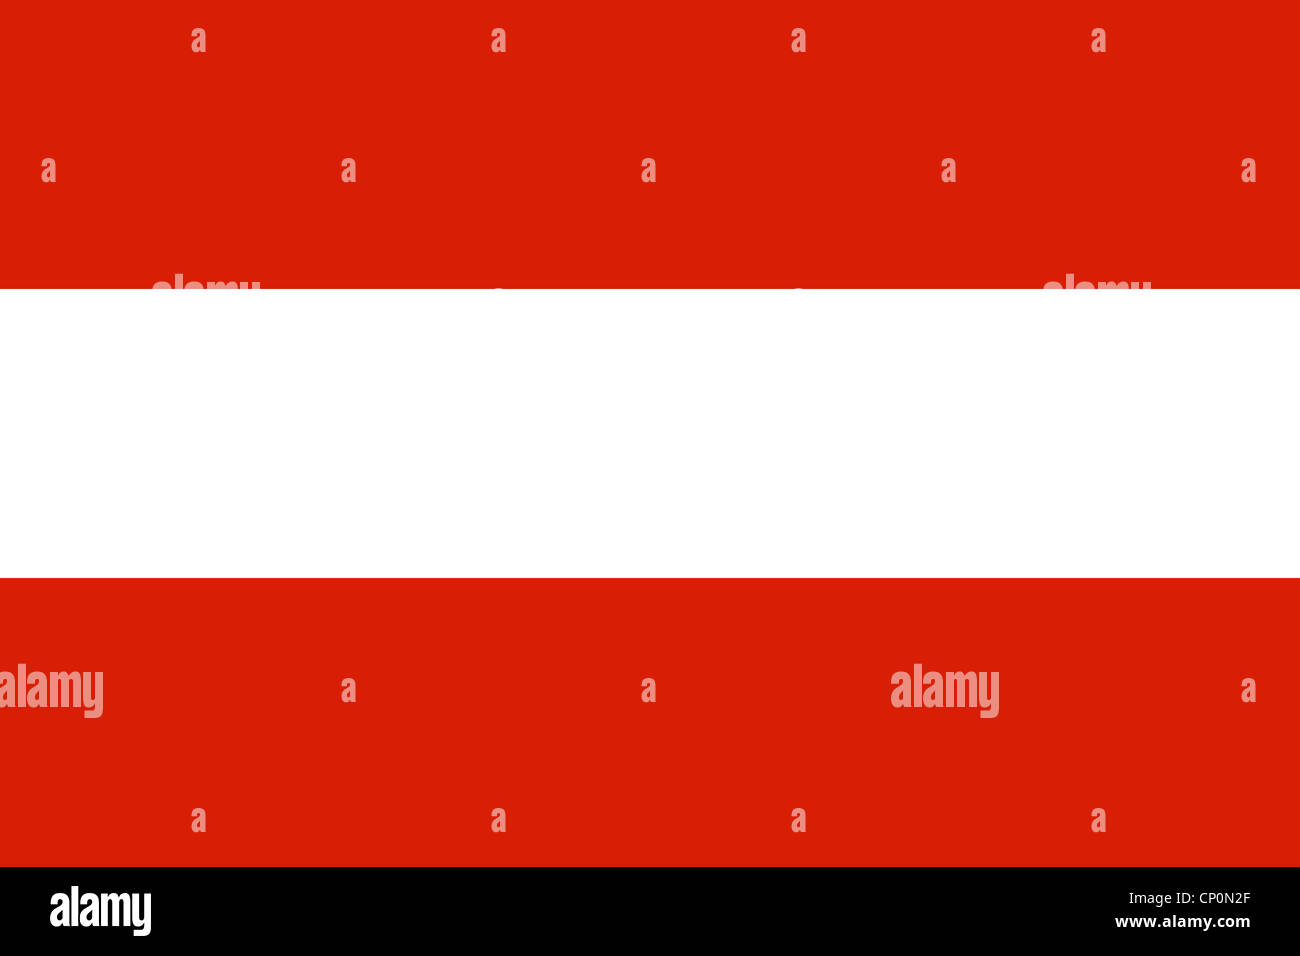 Österreich Fahne ca.90x60cm